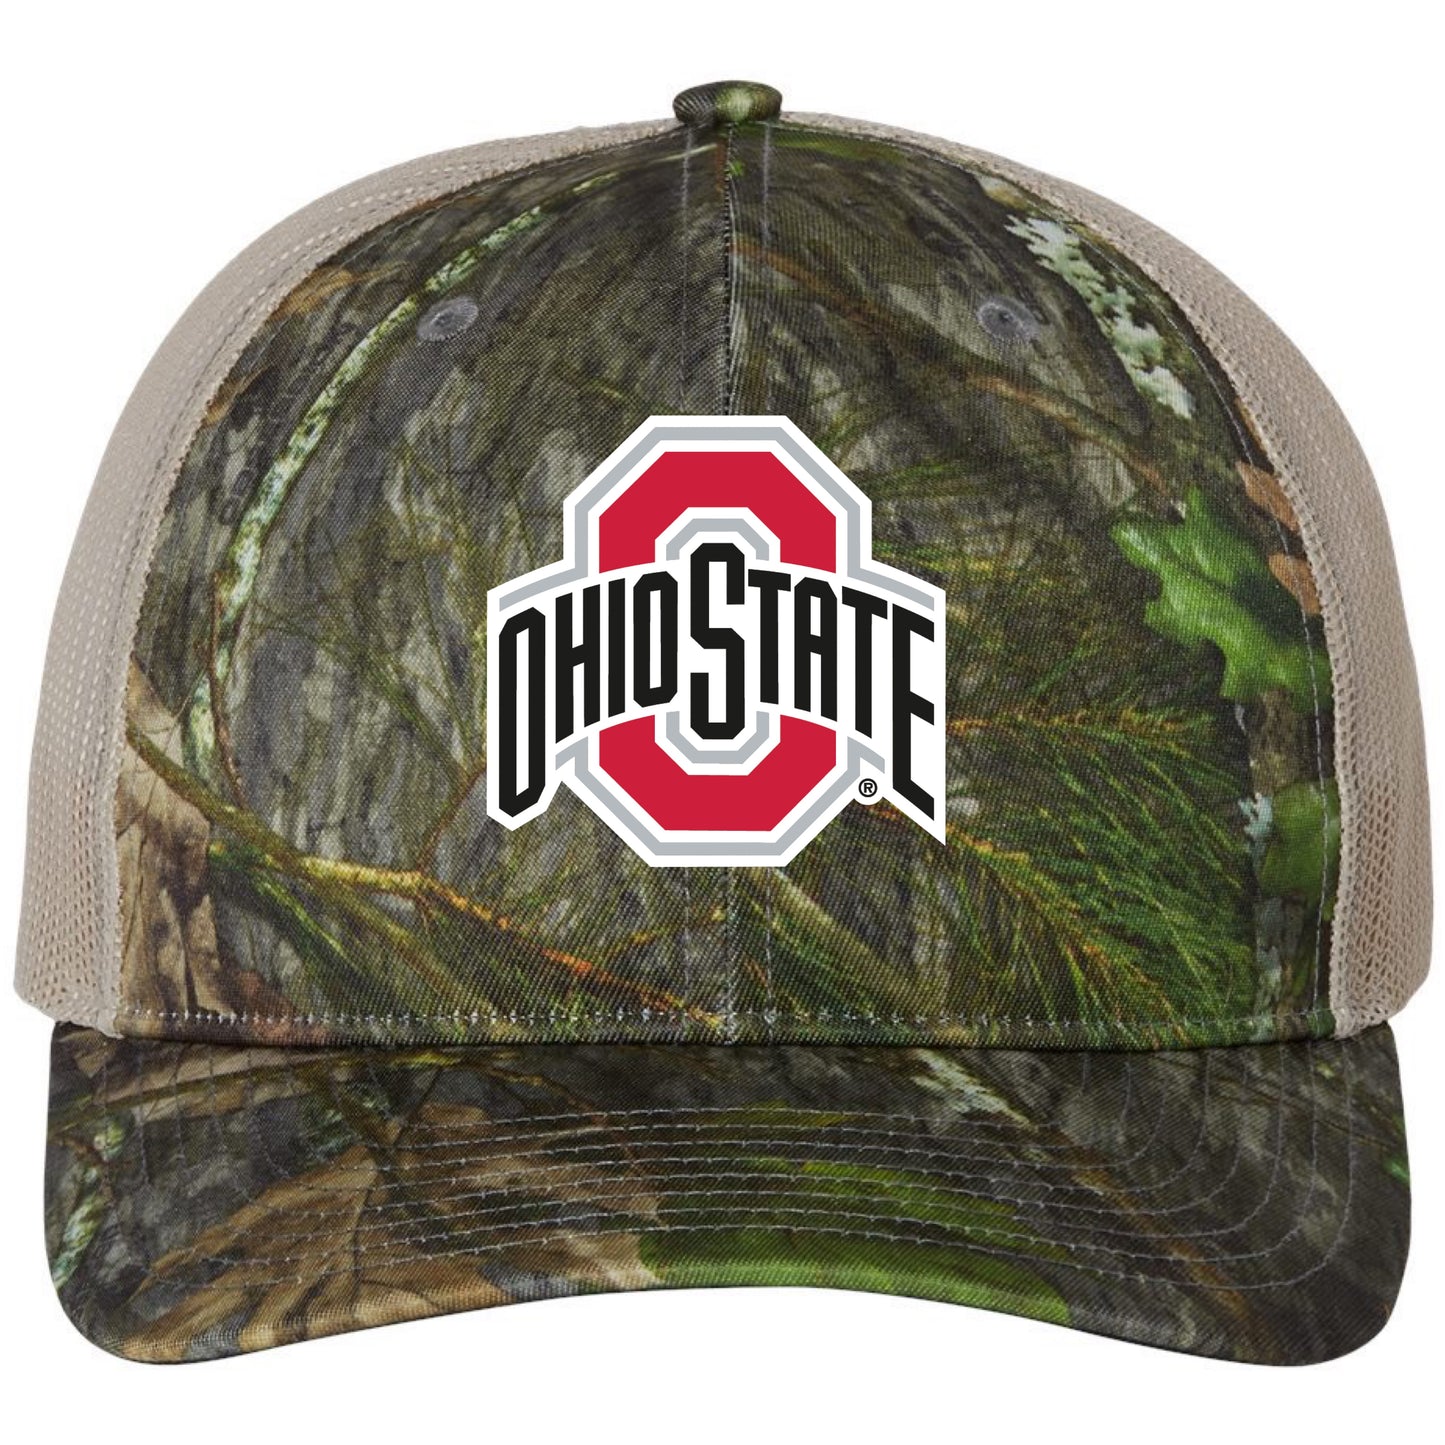 Ohio State Buckeyes 3D Patterned Snapback Trucker Hat- Mossy Oak Obsession/ Khaki - Ten Gallon Hat Co.